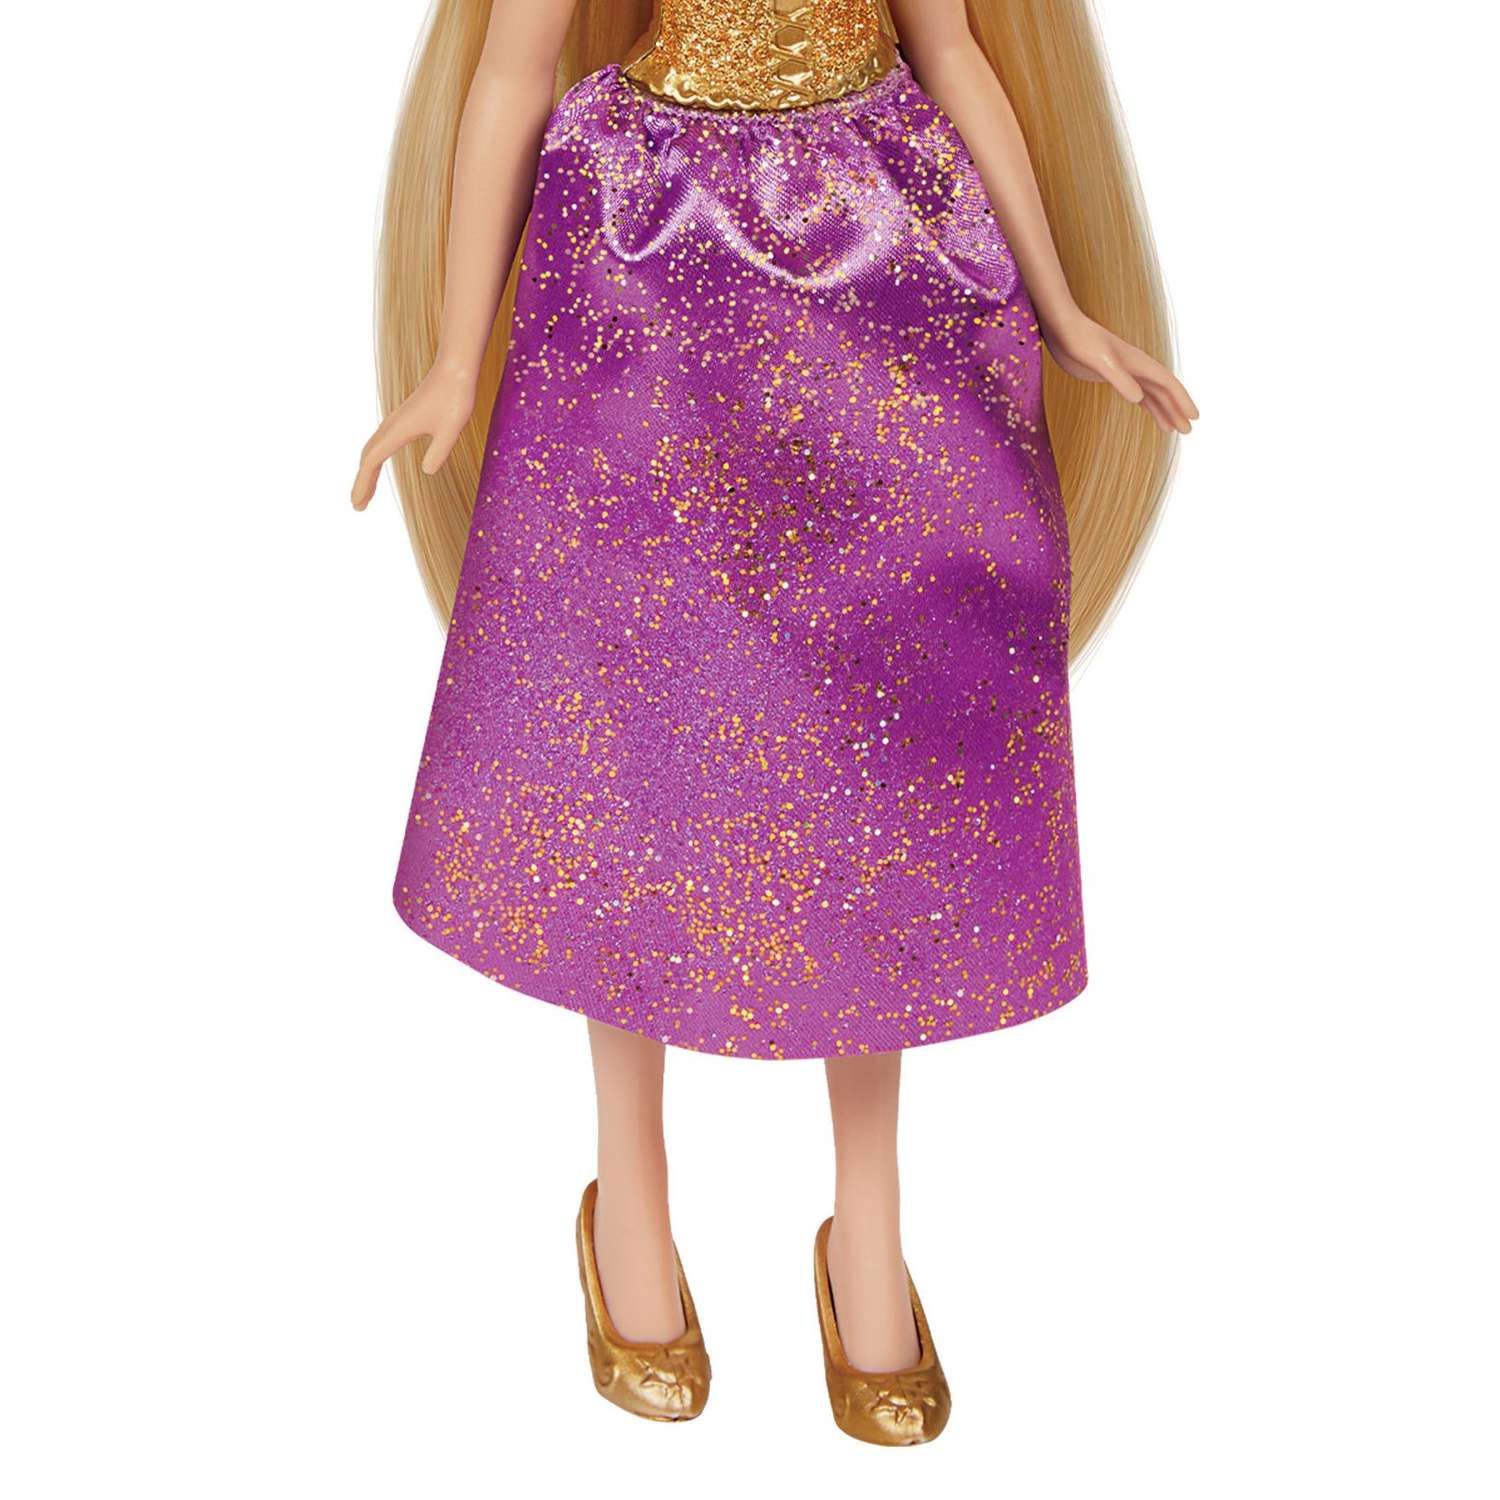 Кукла Disney Princess Hasbro Рапунцель F25105X0 F25105X0 - фото 9